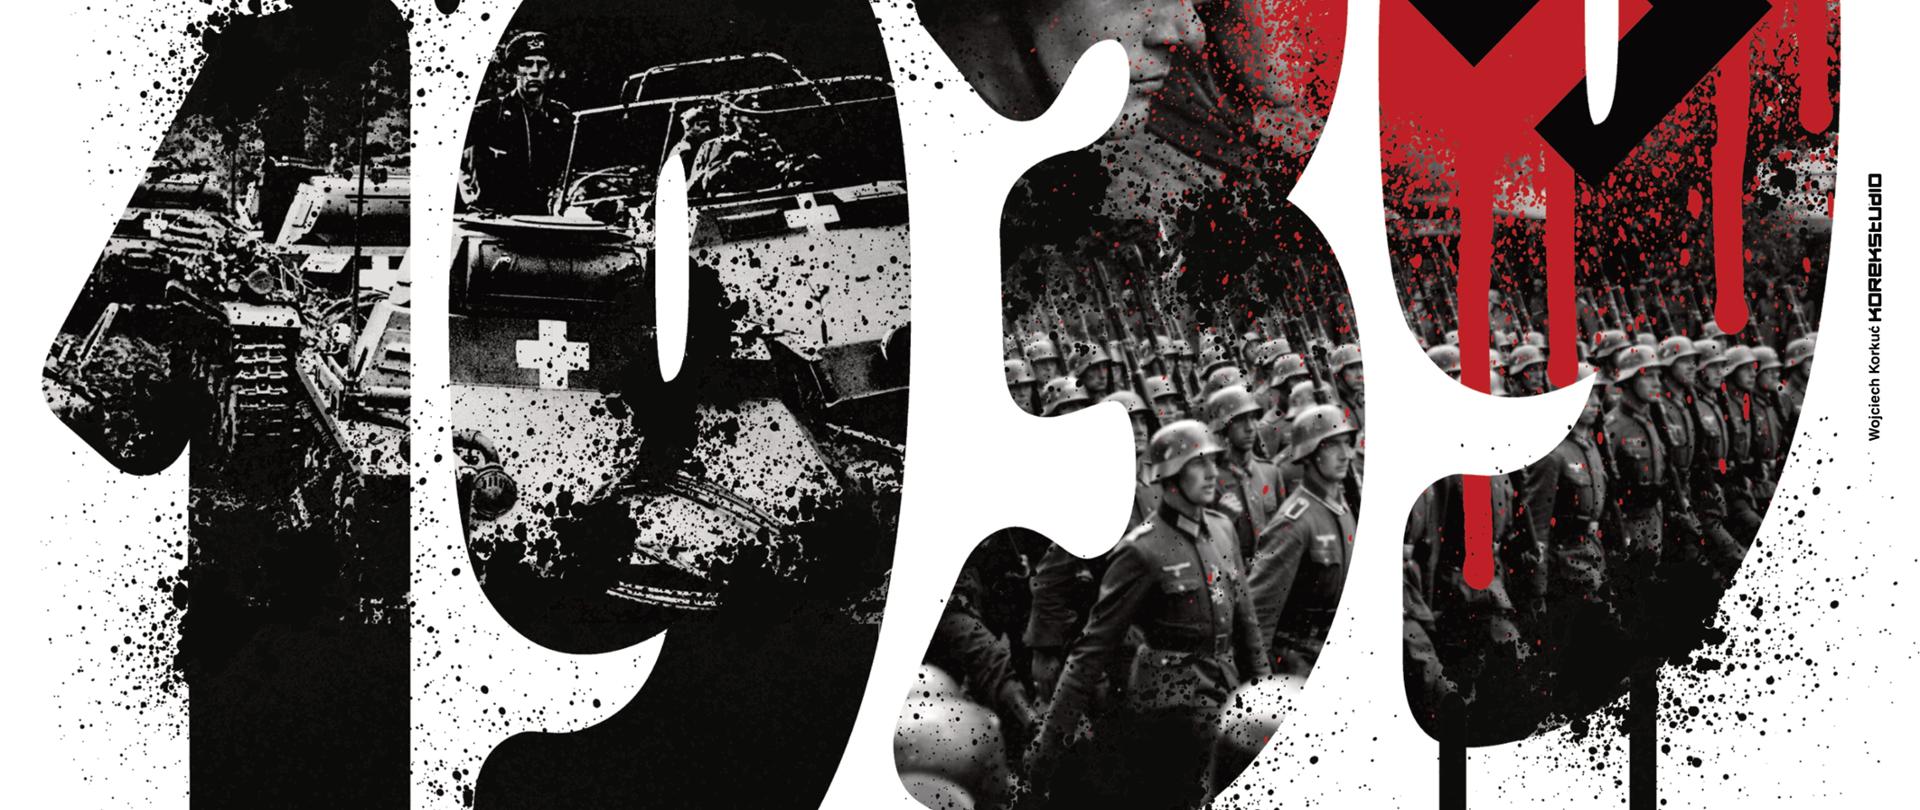 Plakat pod tytułem - 83. rocznica agresji Niemiec na Polskę.